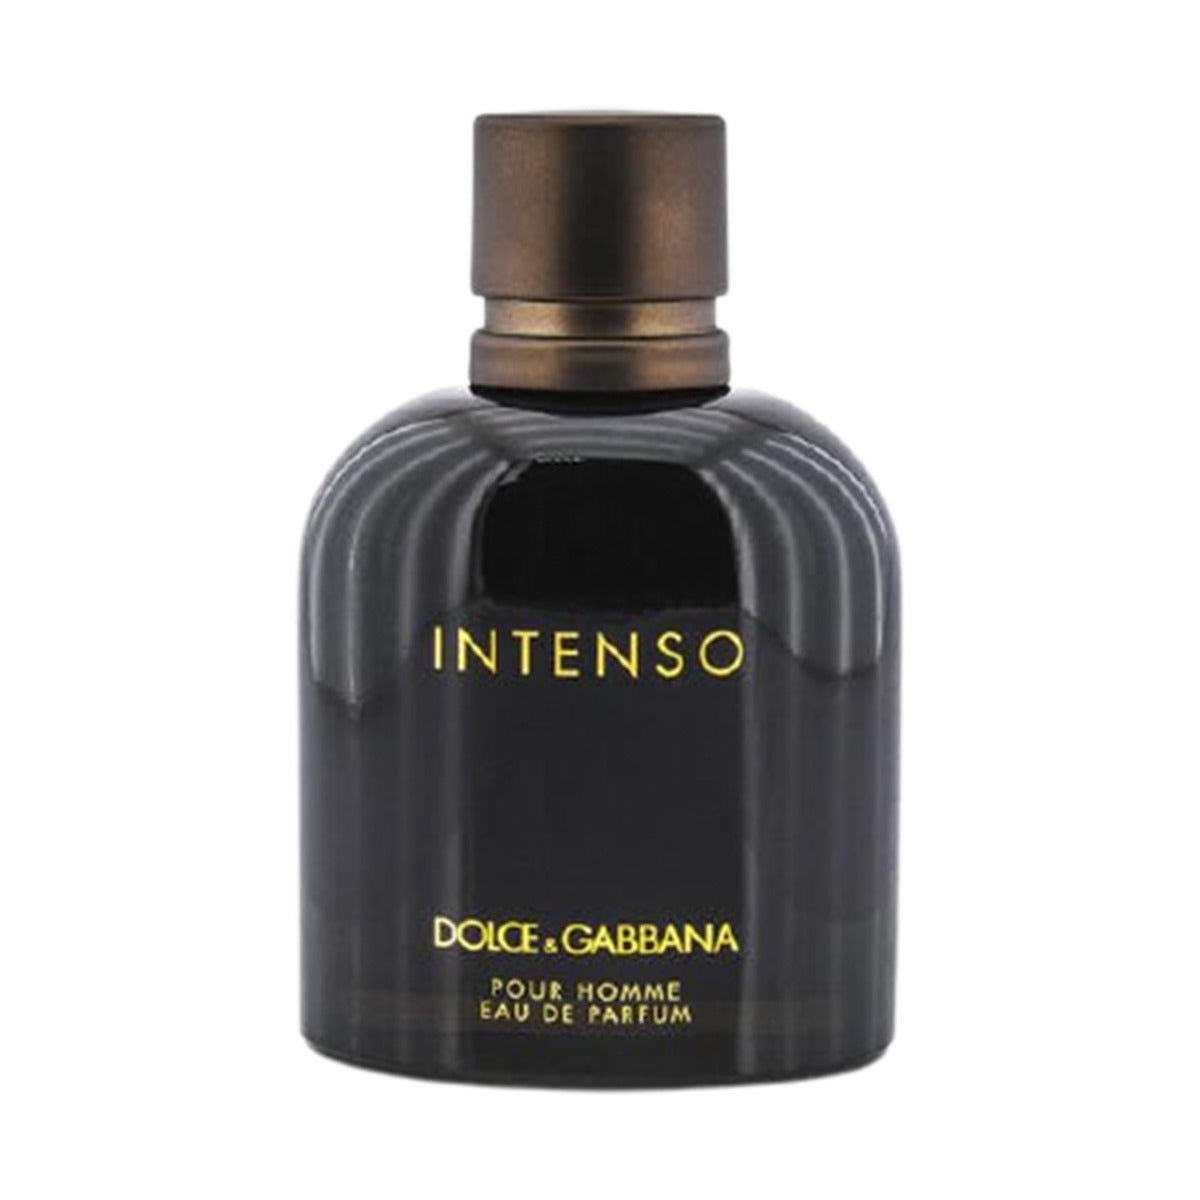 Dolce & Gabbana - Pour Homme Intenso For Men Edp 125Ml - AllurebeautypkDolce & Gabbana - Pour Homme Intenso For Men Edp 125Ml